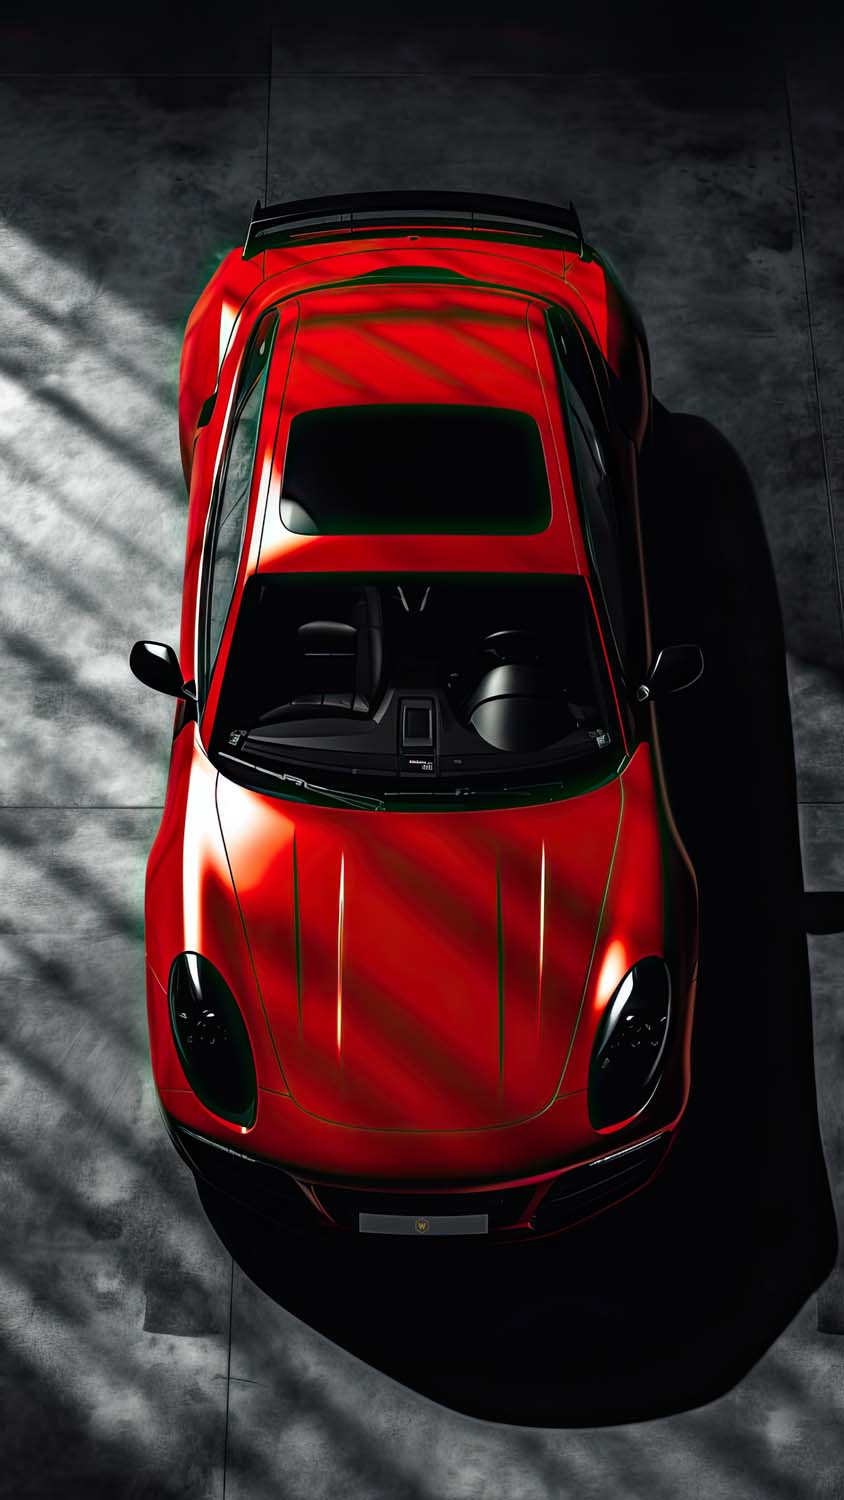 Porsche Red